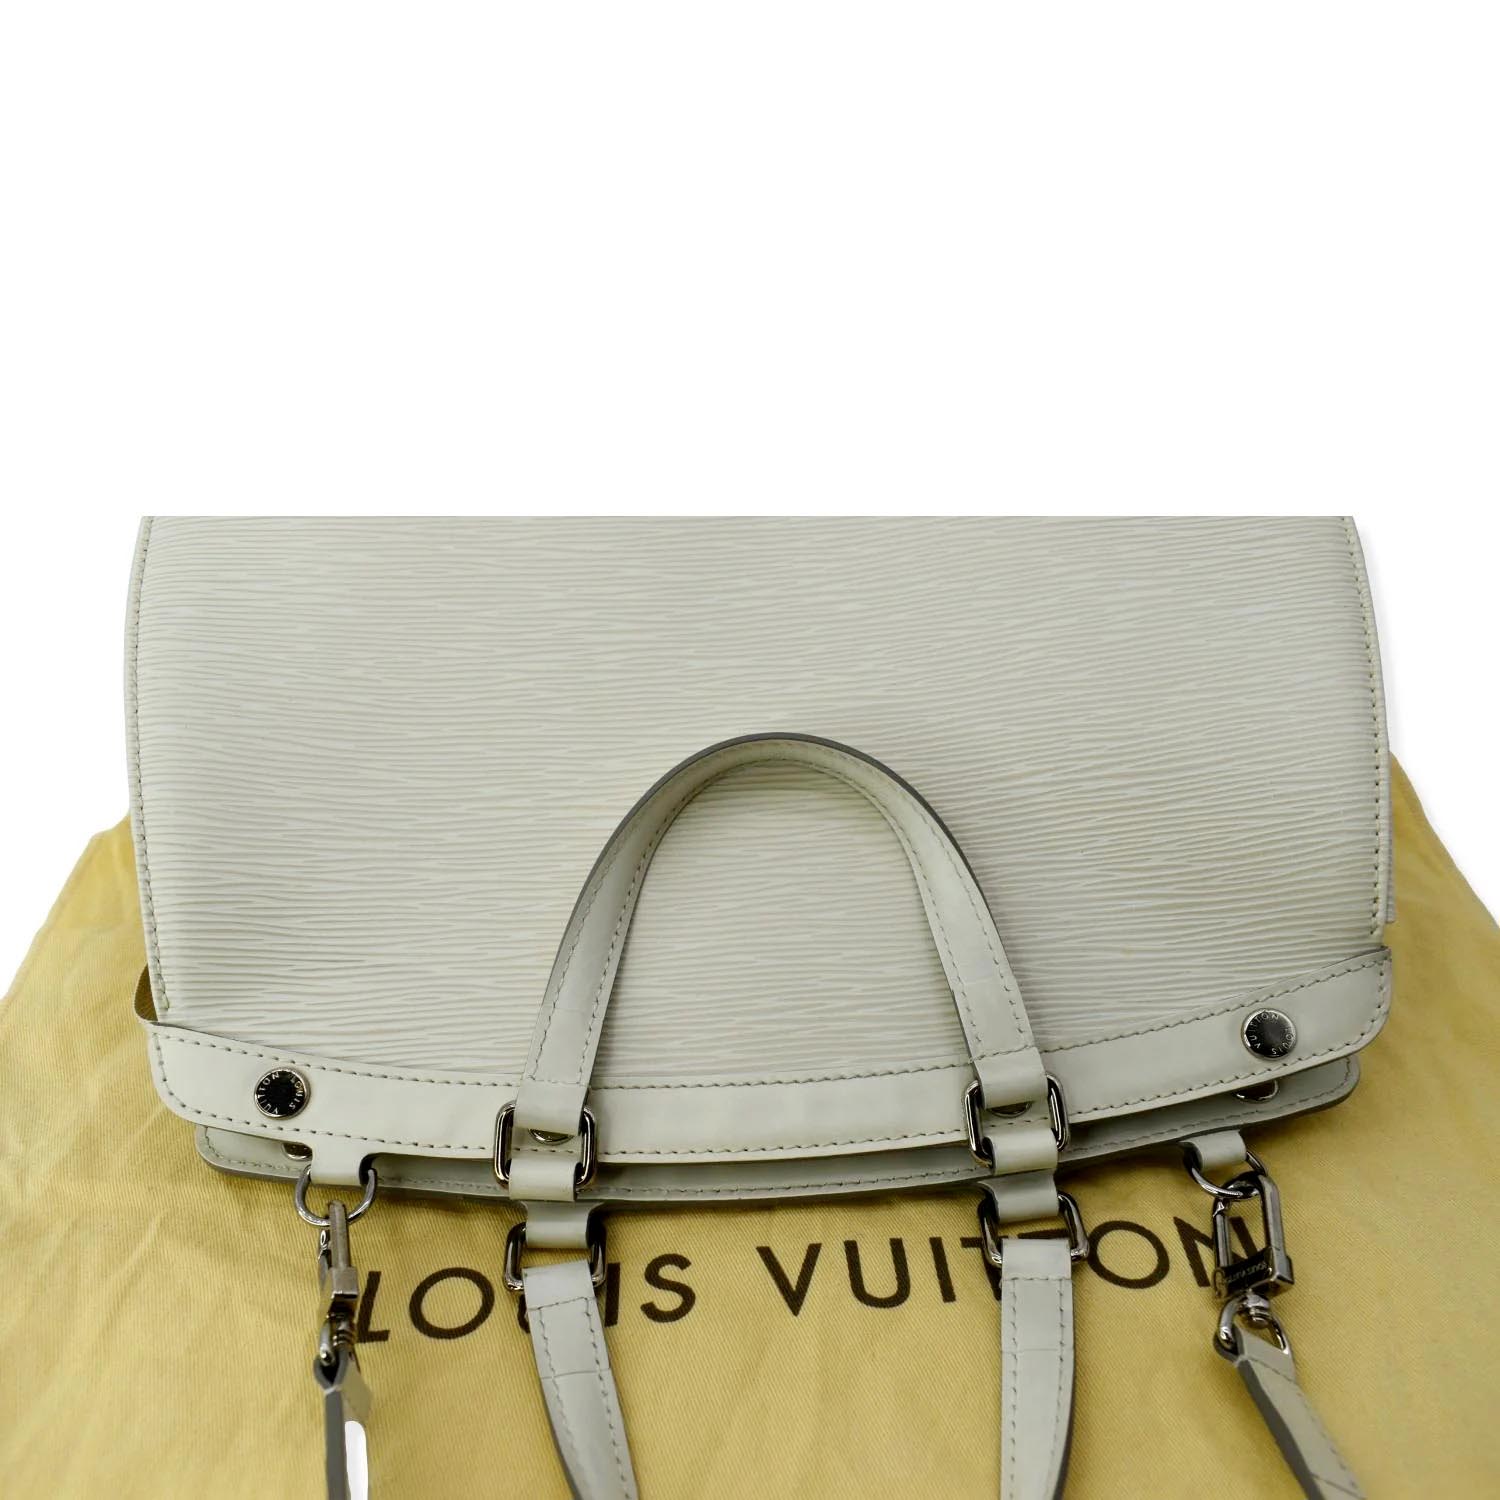 Louis Vuitton 'Brea' MM Tote Bag